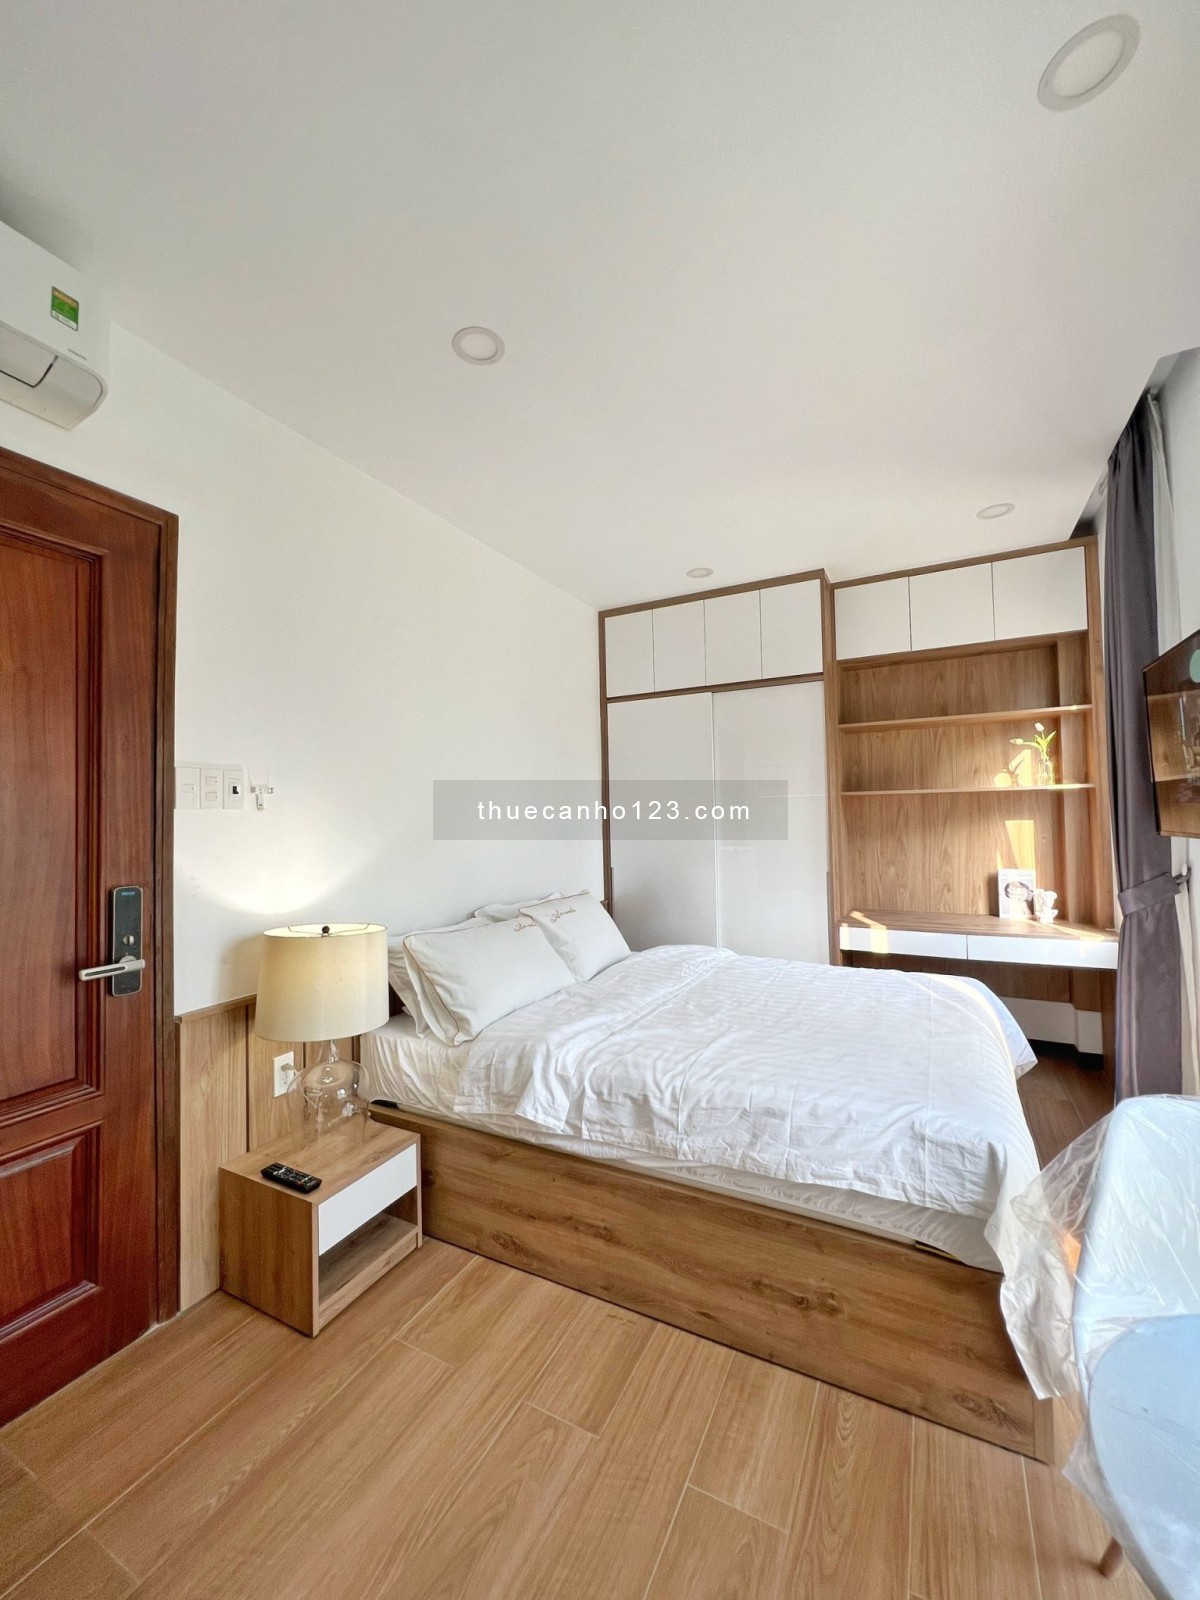 Cho thuê căn hộ Studio cao cấp tại Trường Sa Phú Nhuận, 30m2, giá 8tr8, 1 pn, 1 wc